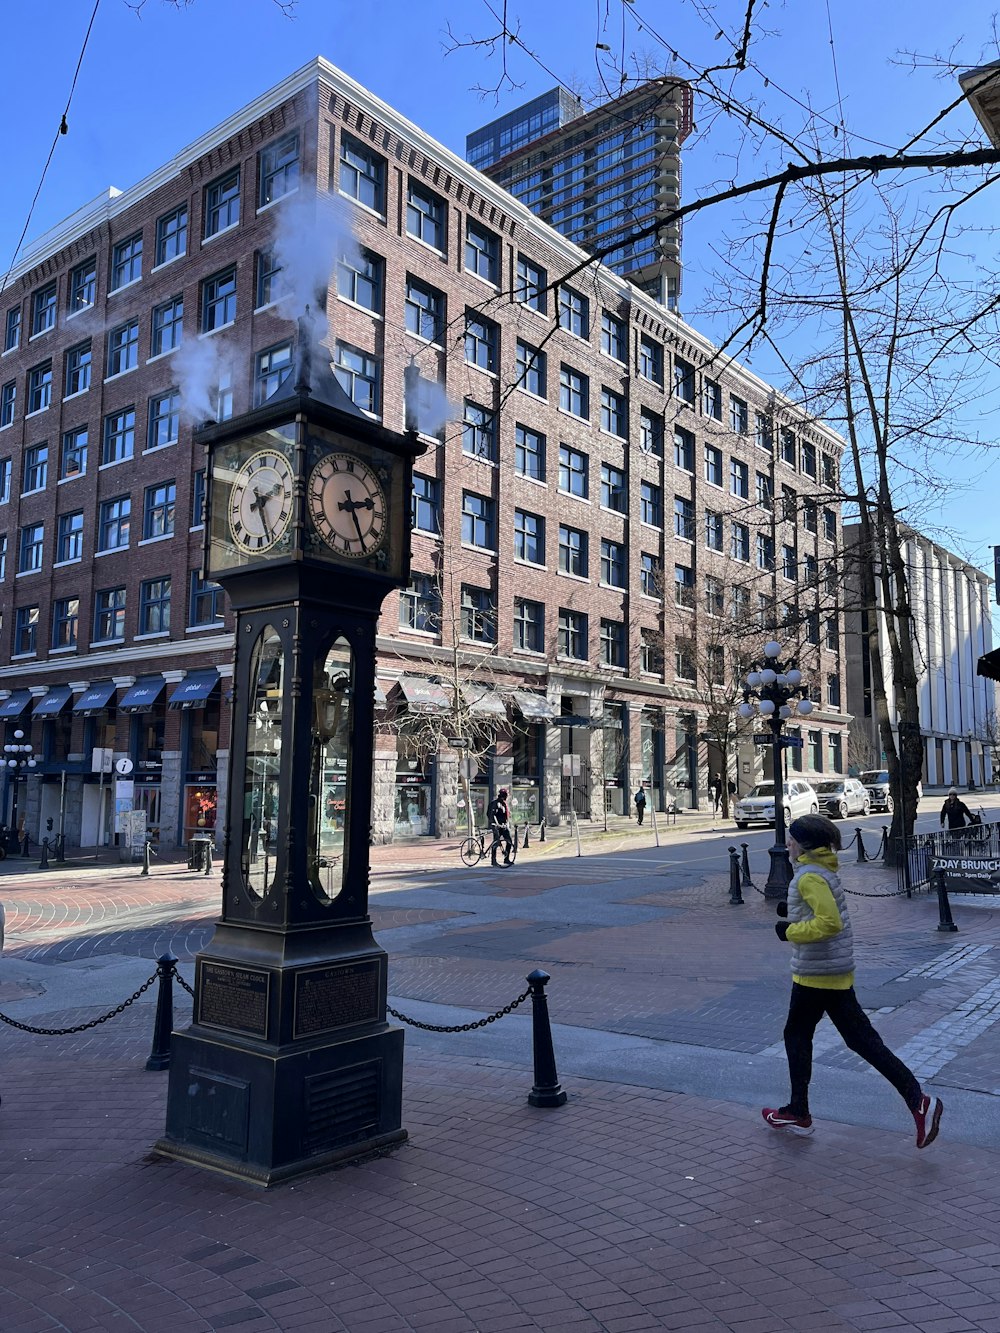 a clock on a sidewalk